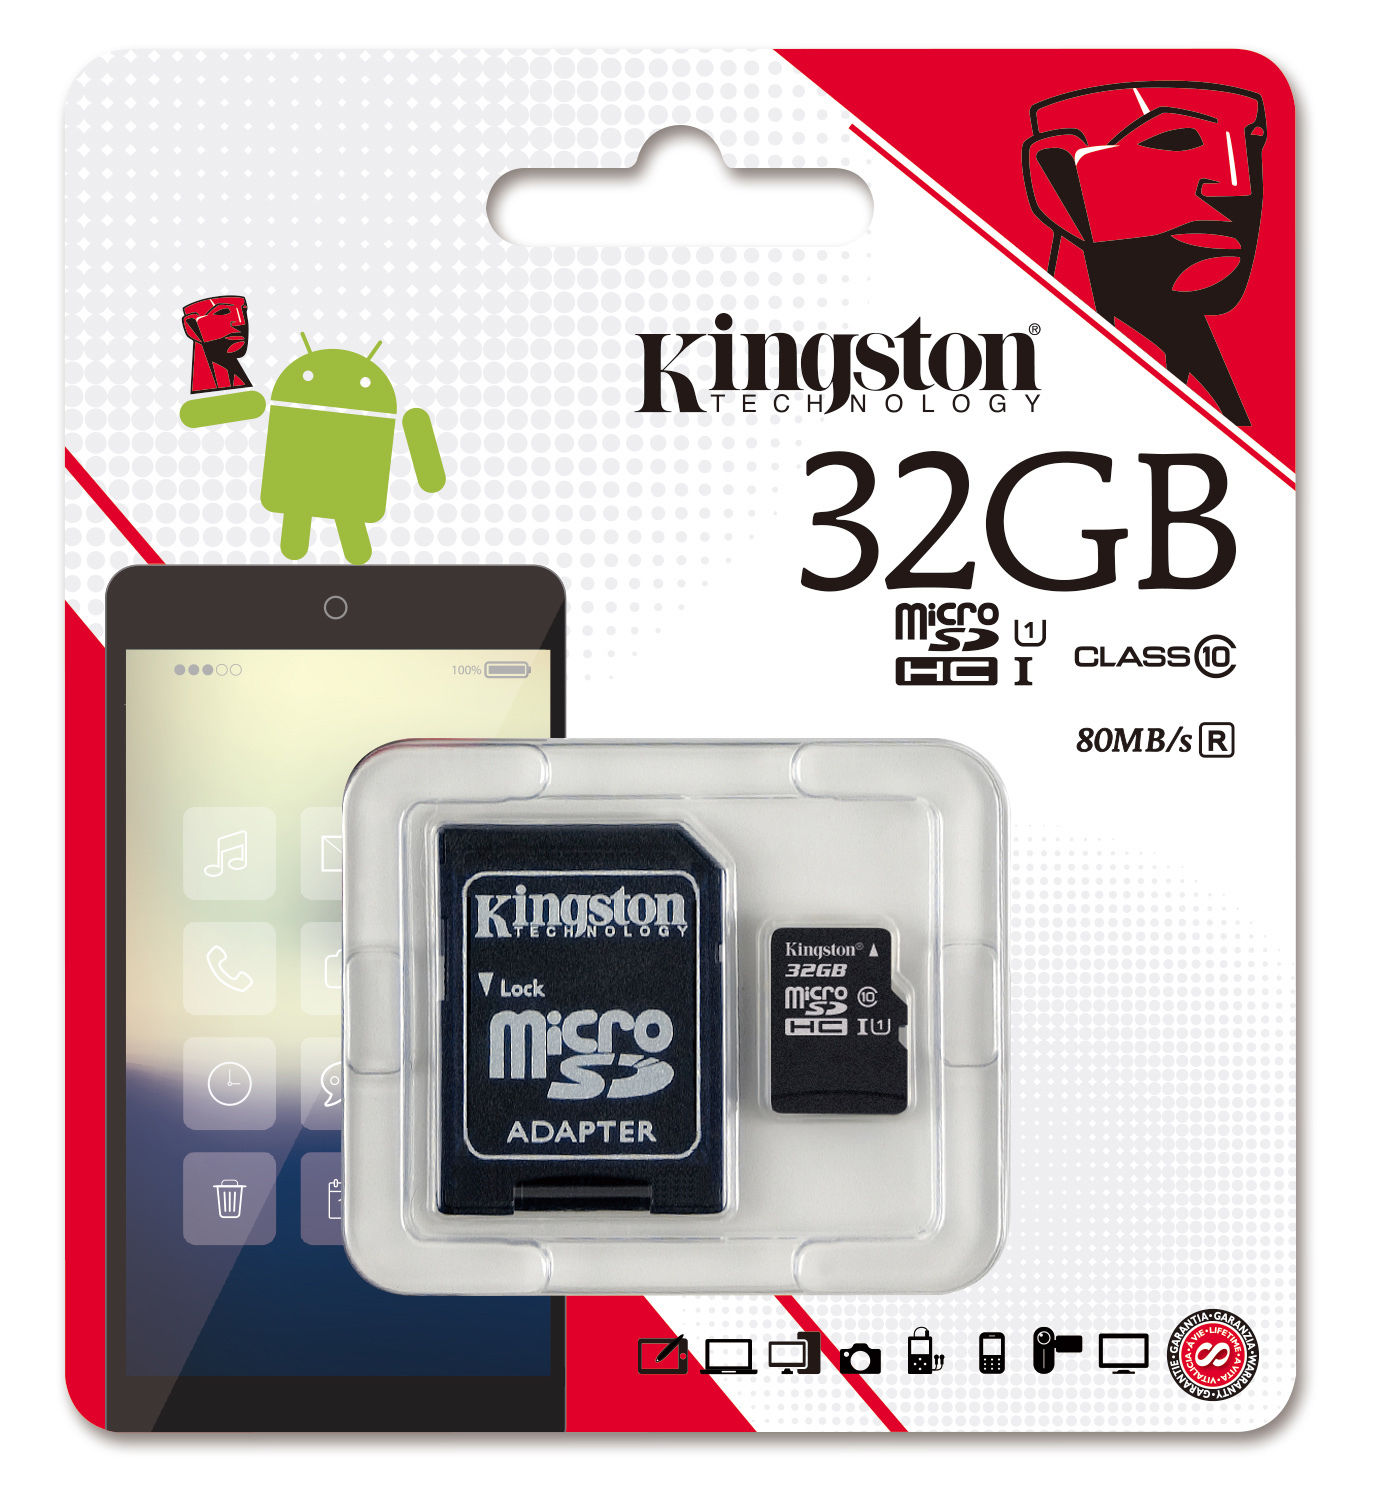 Thẻ nhớ Micro Kingston 32GB đóng hộp 